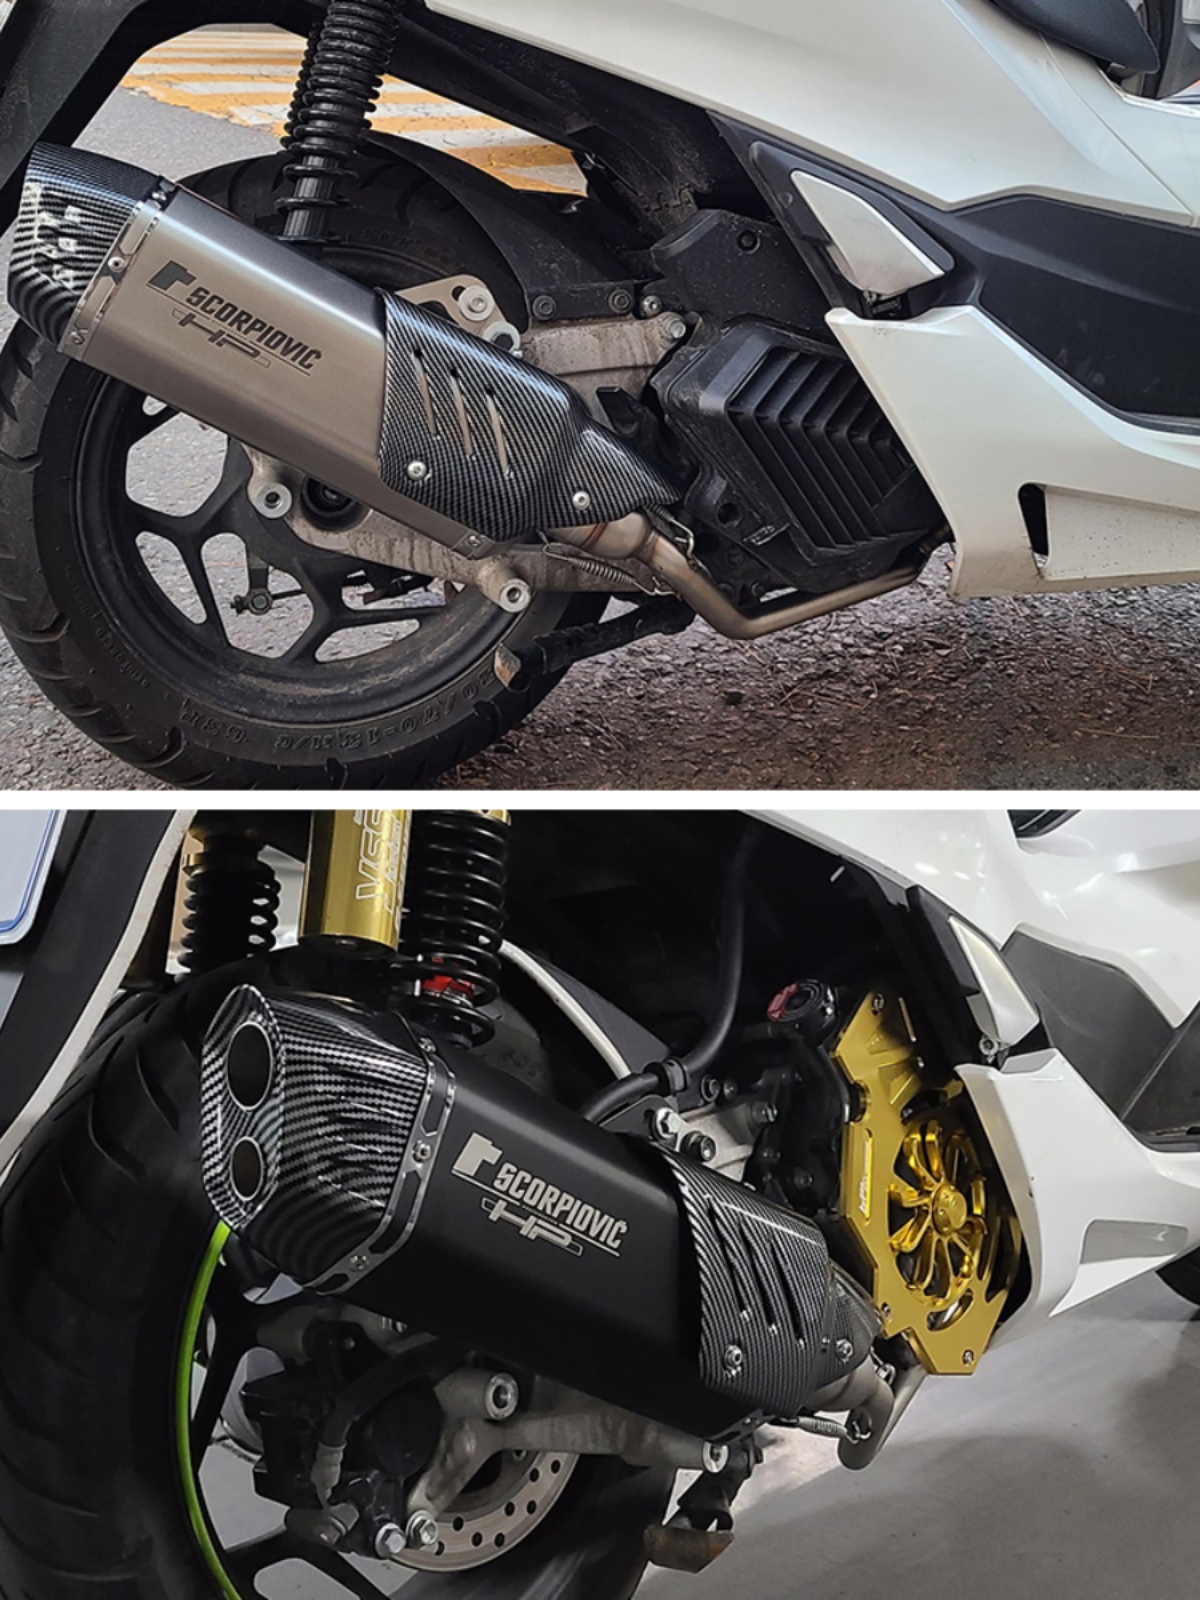 适用于摩托车 PCX125 150摩托车排气管改装   烧蓝前段 21-22年款